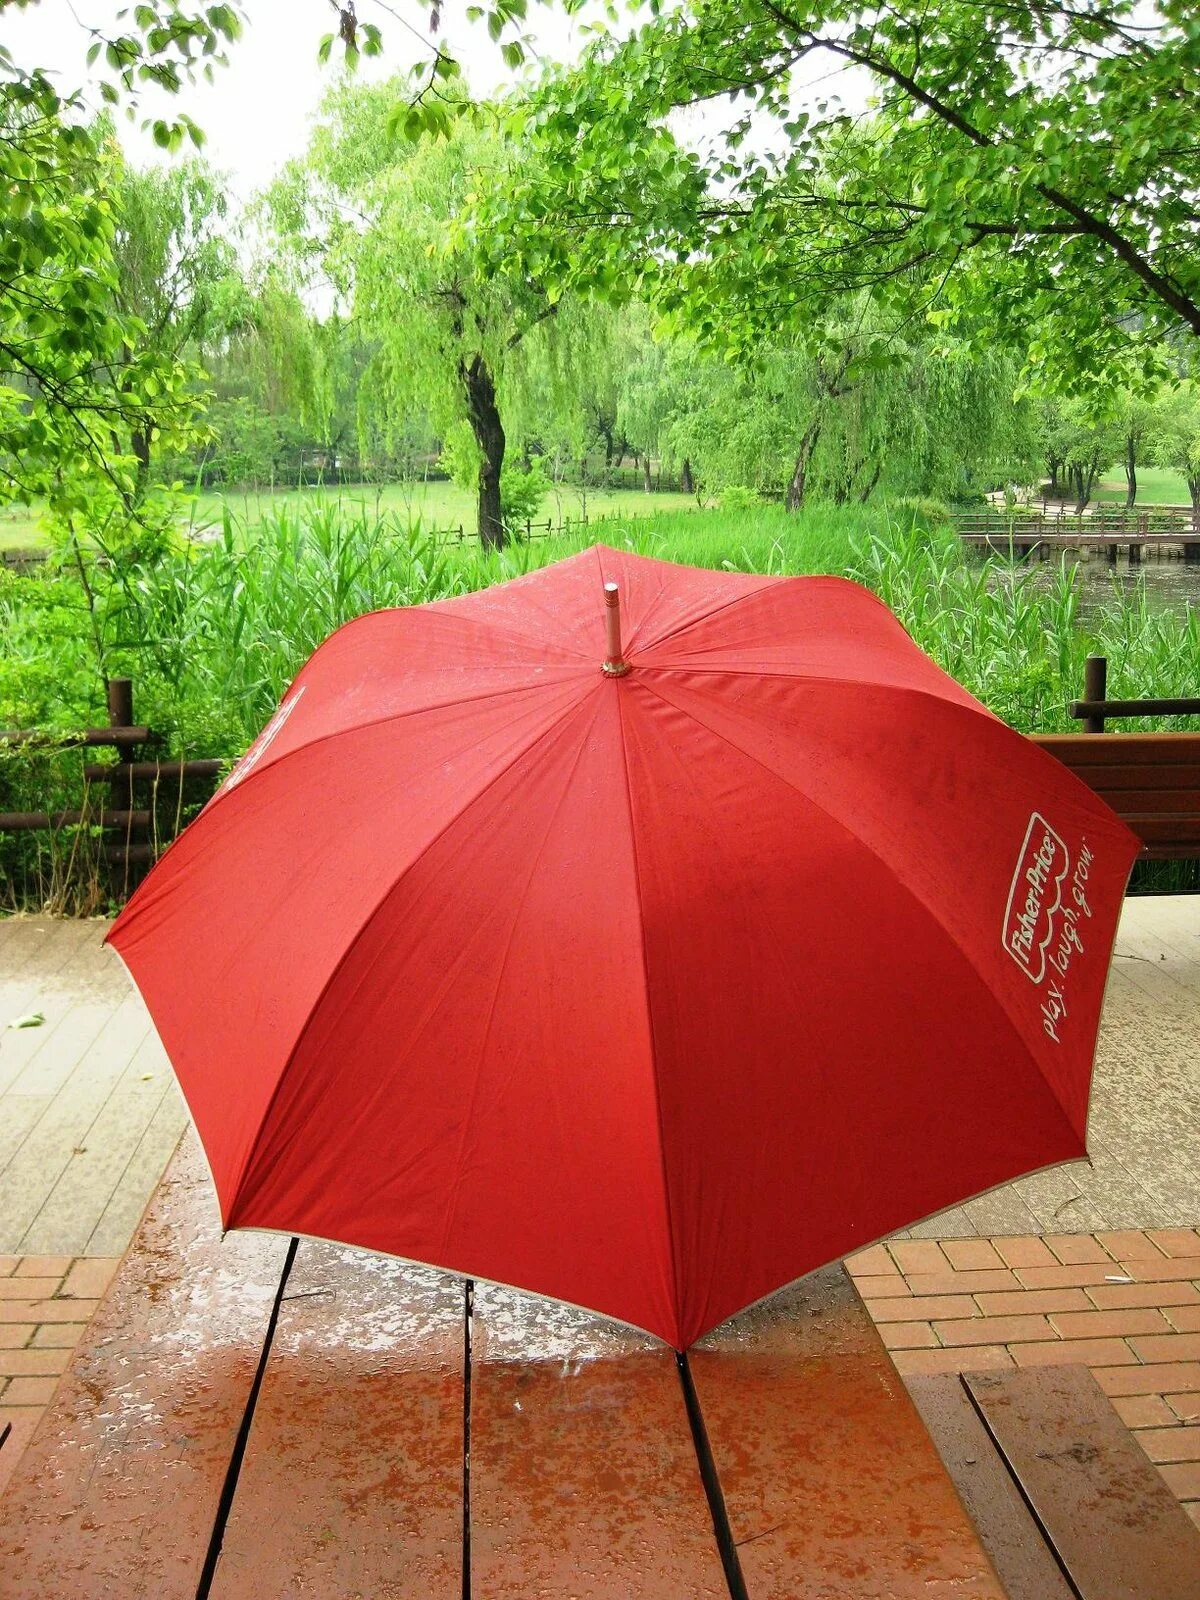 Зонтик г. Зонт. Красивый зонт. Зотик. Дождевой зонт.